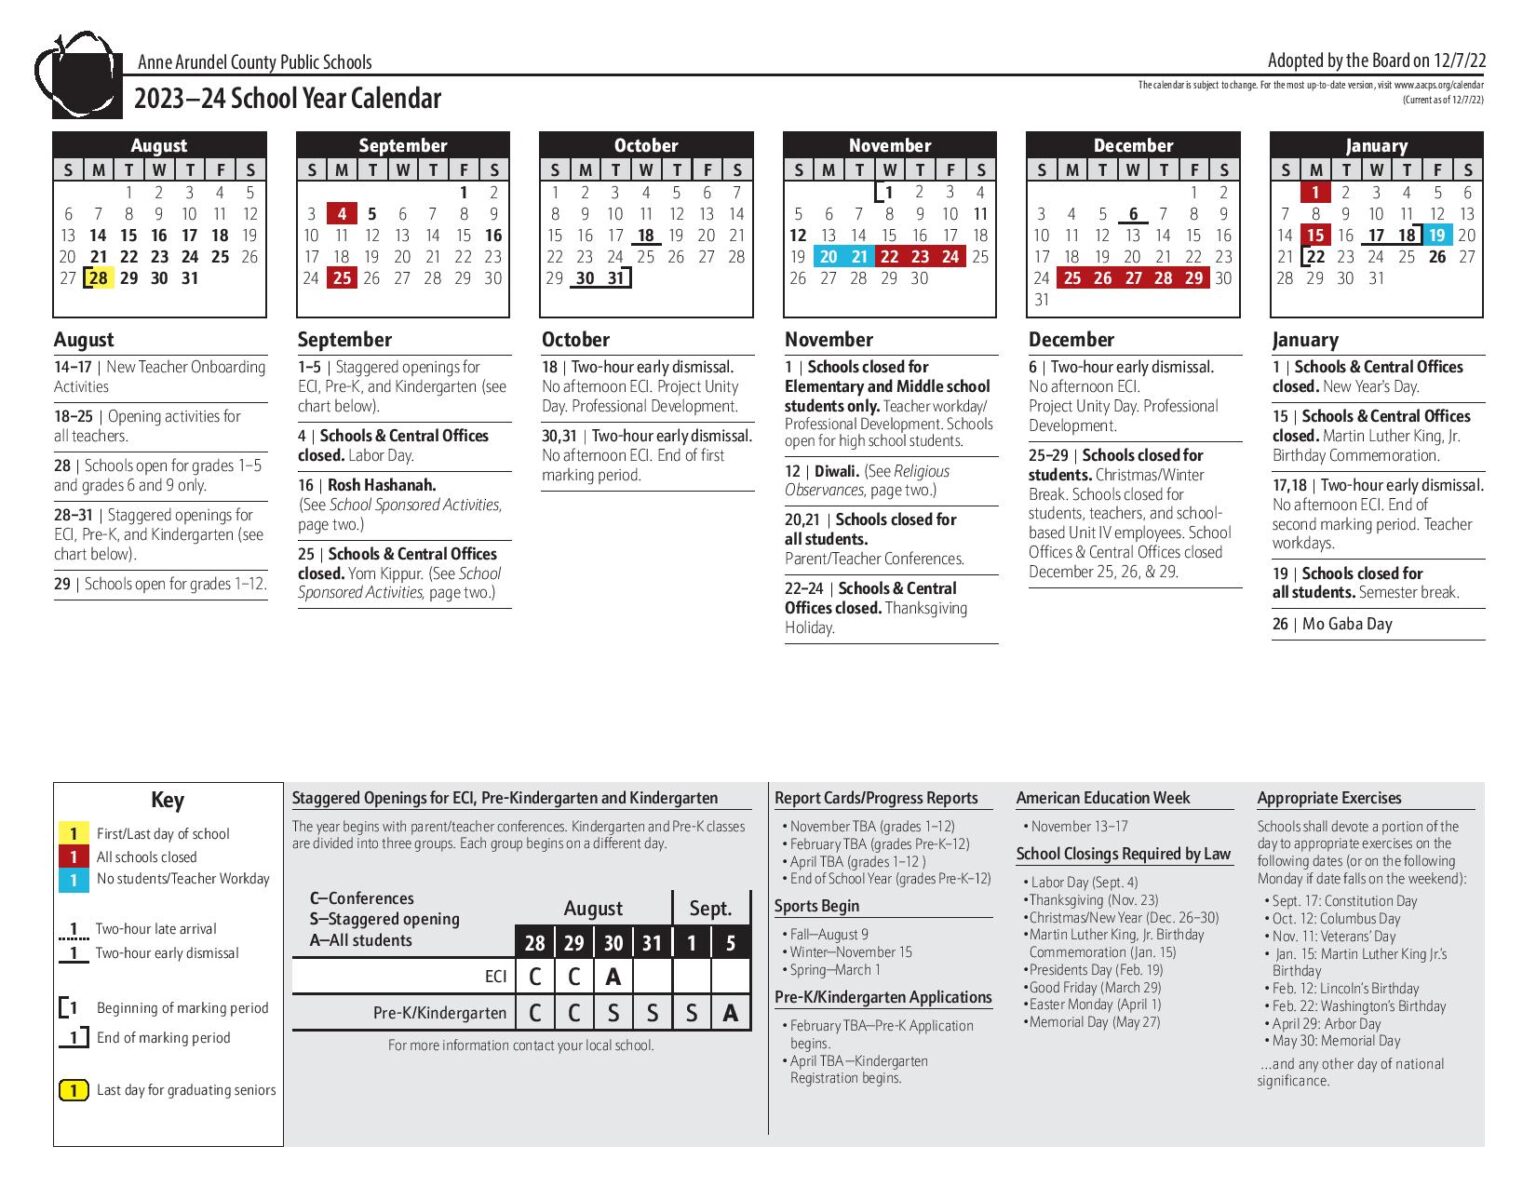 Anne Arundel County Public Schools Calendar 20232024 PDF